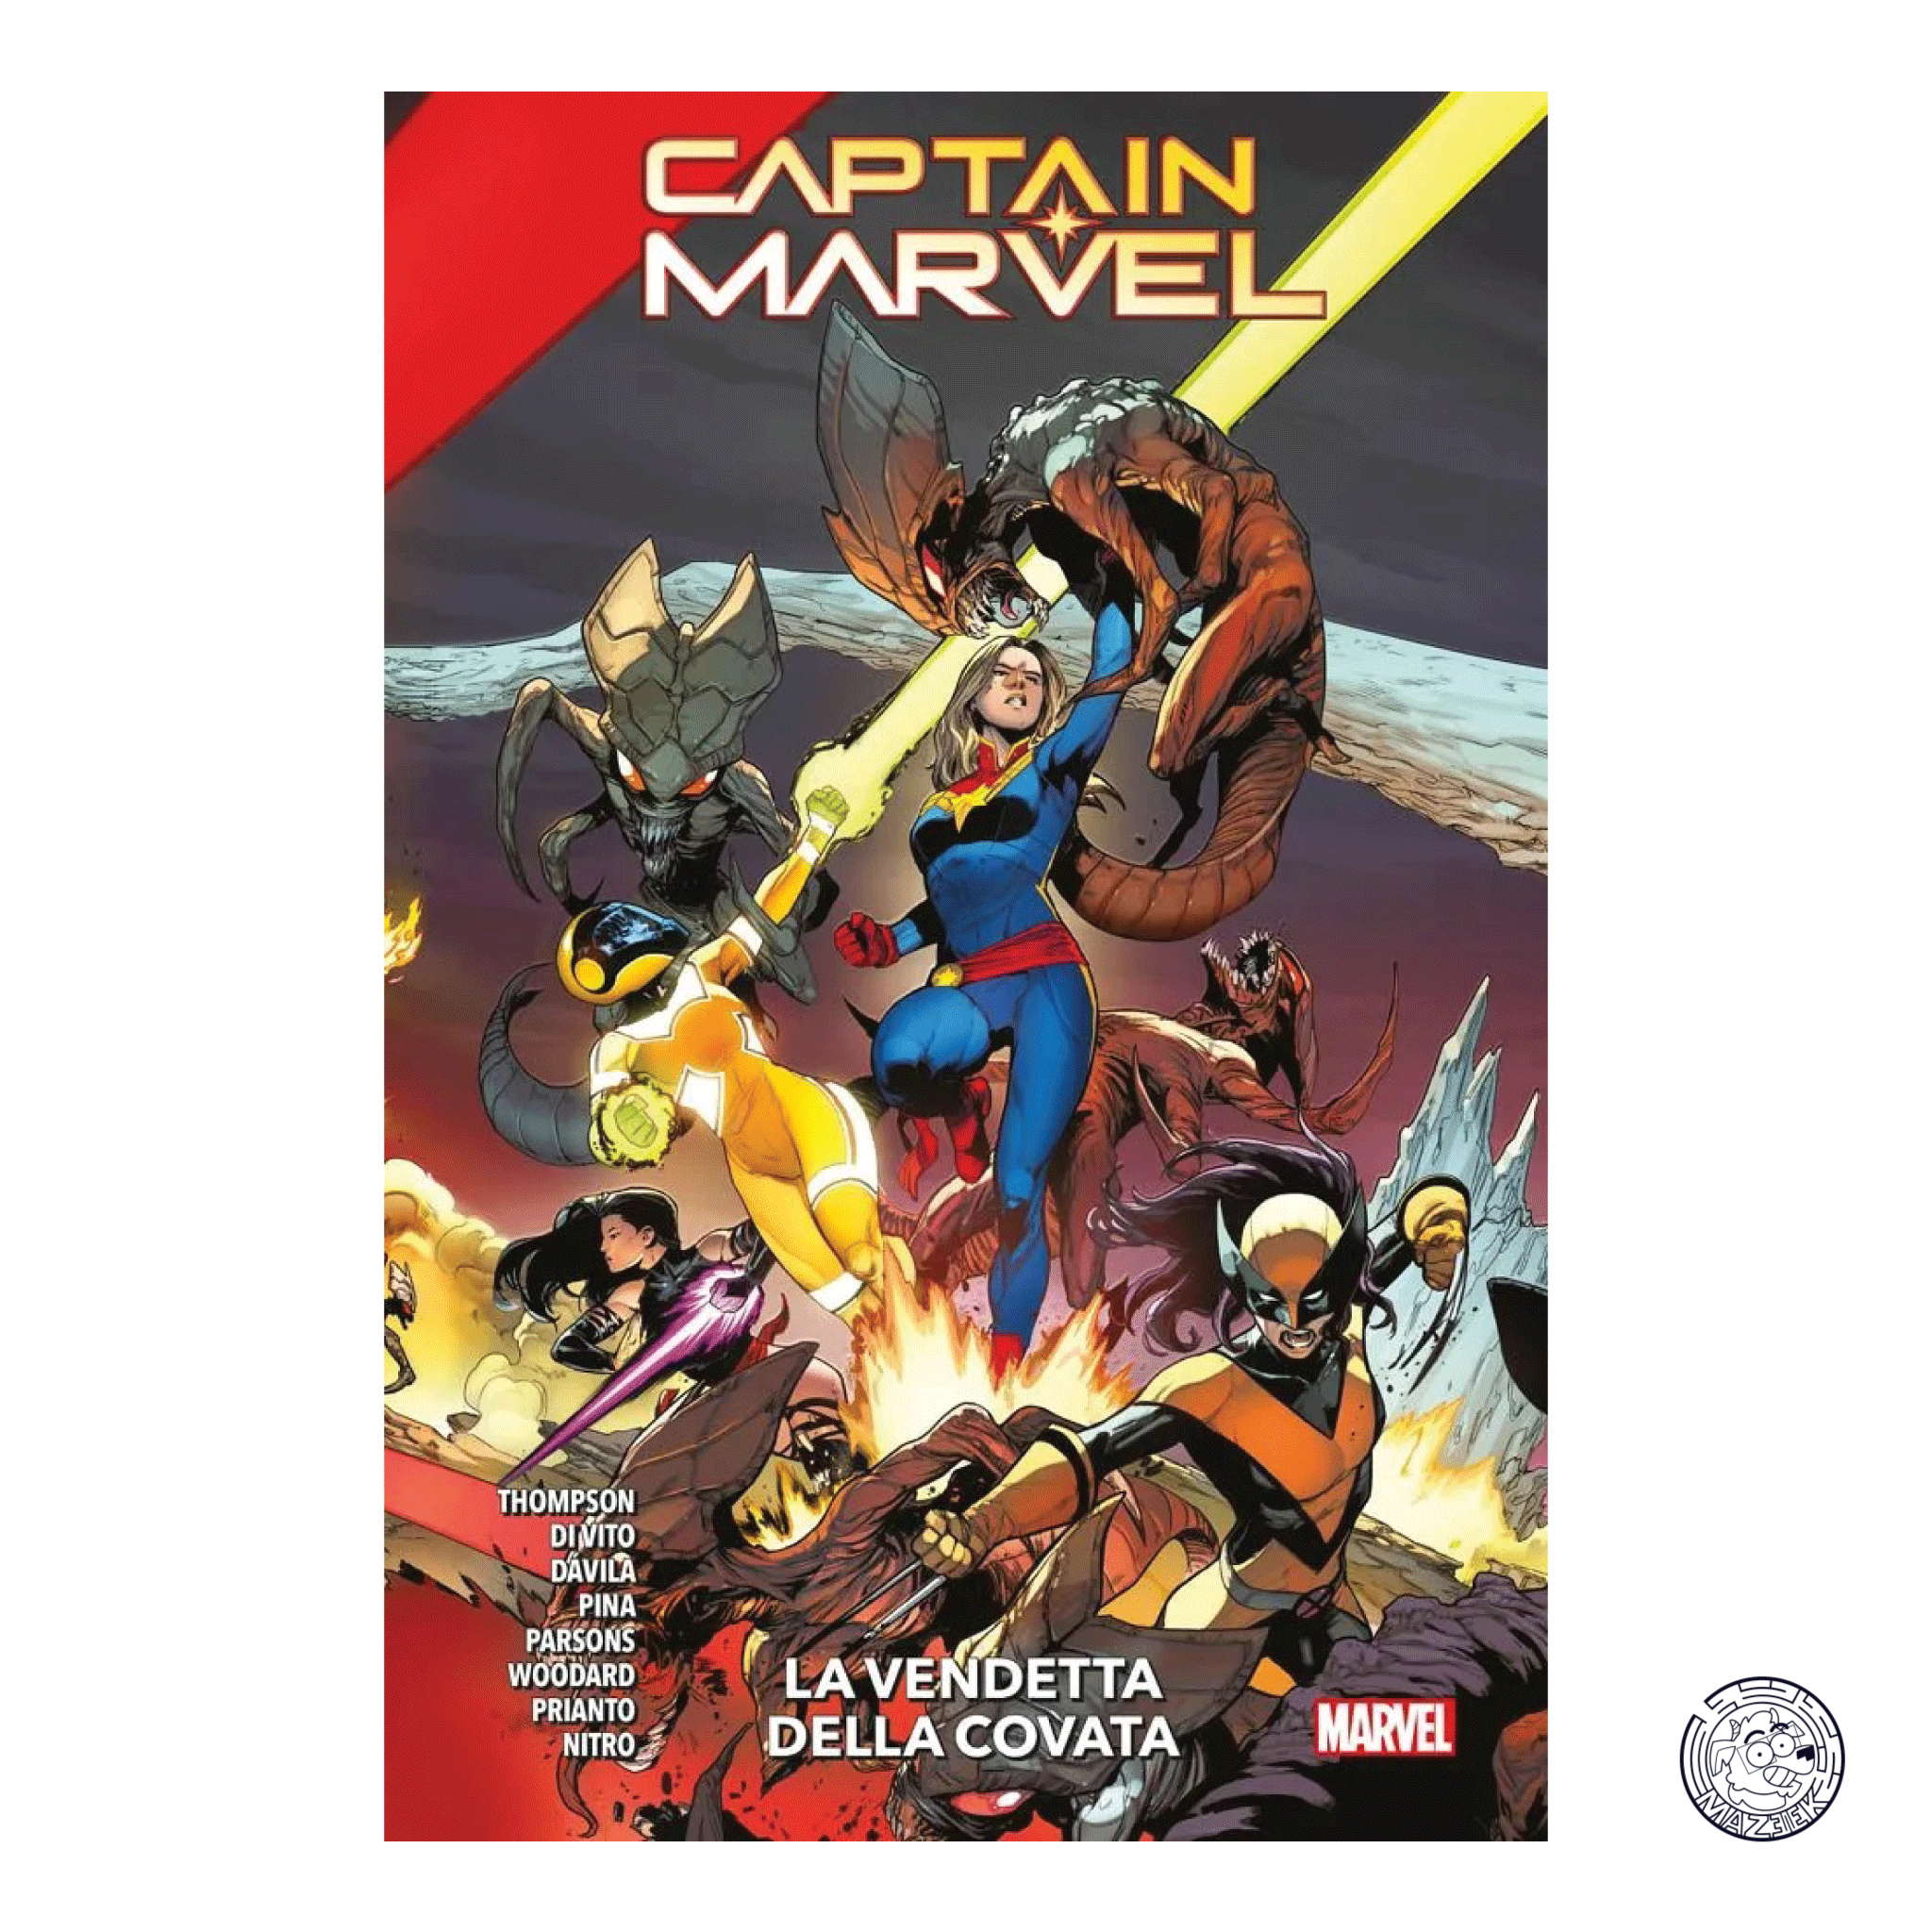 Captain Marvel: Revenge of the Brood